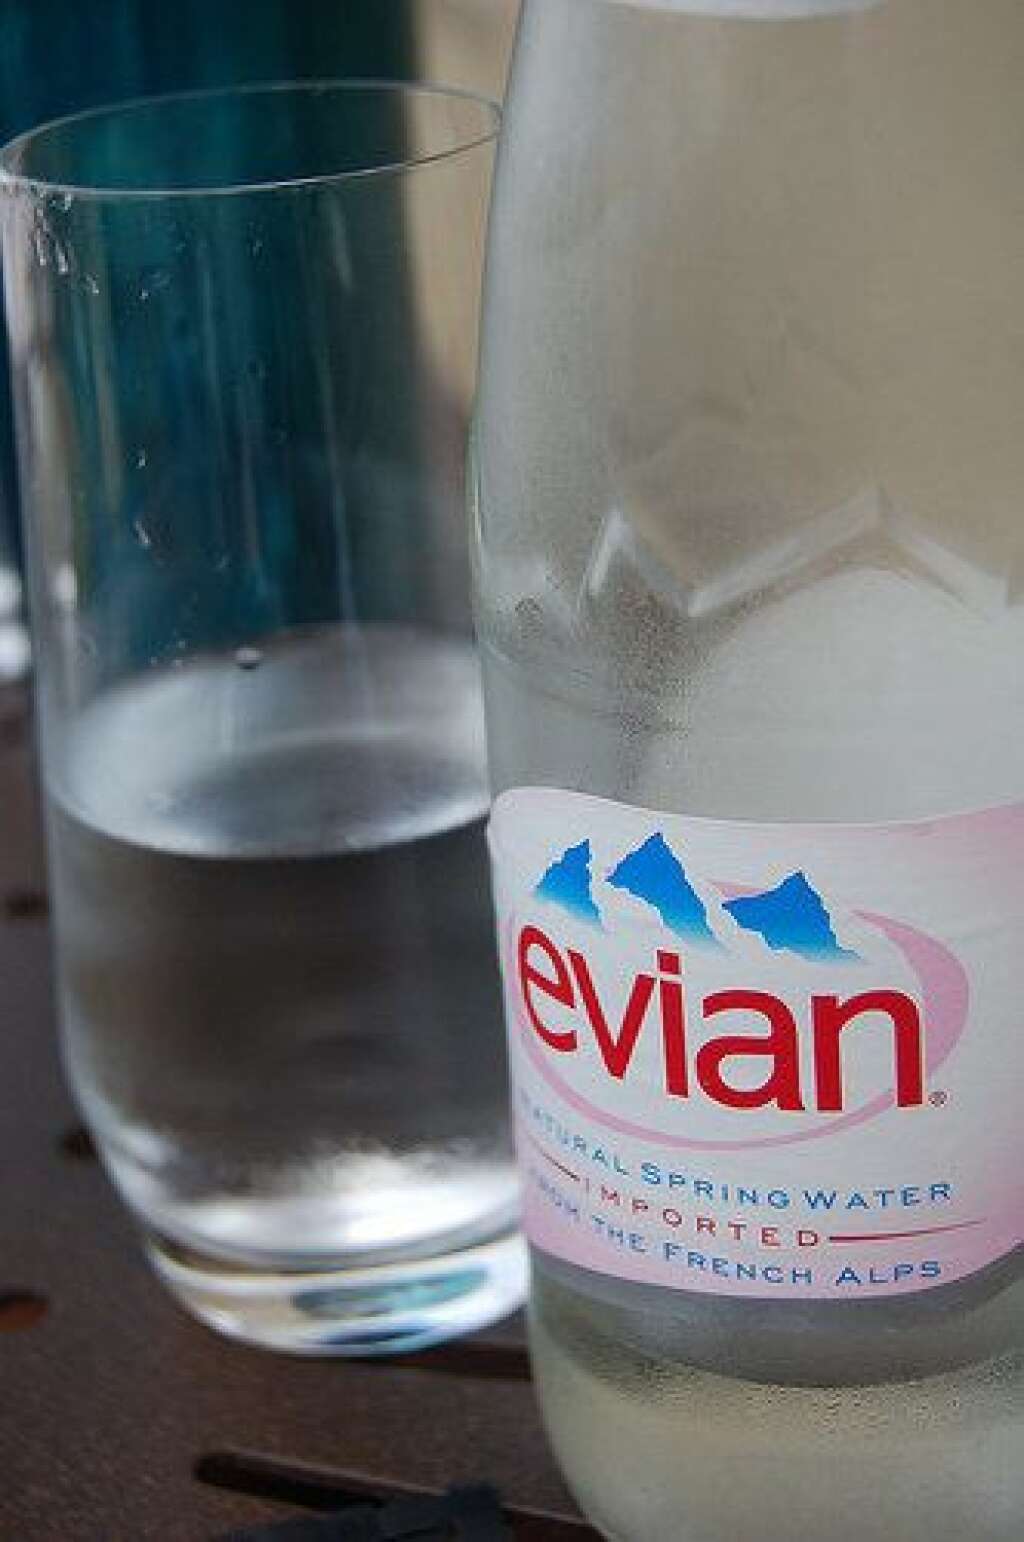 ... le litre d'Evian? -1 centime - Imposée à 5,5%, la bouteille d'Evian coûtait en moyenne 50 centimes. Avec la TVA à 5%, son prix baissera à peine de 1 centime, hors inflation.